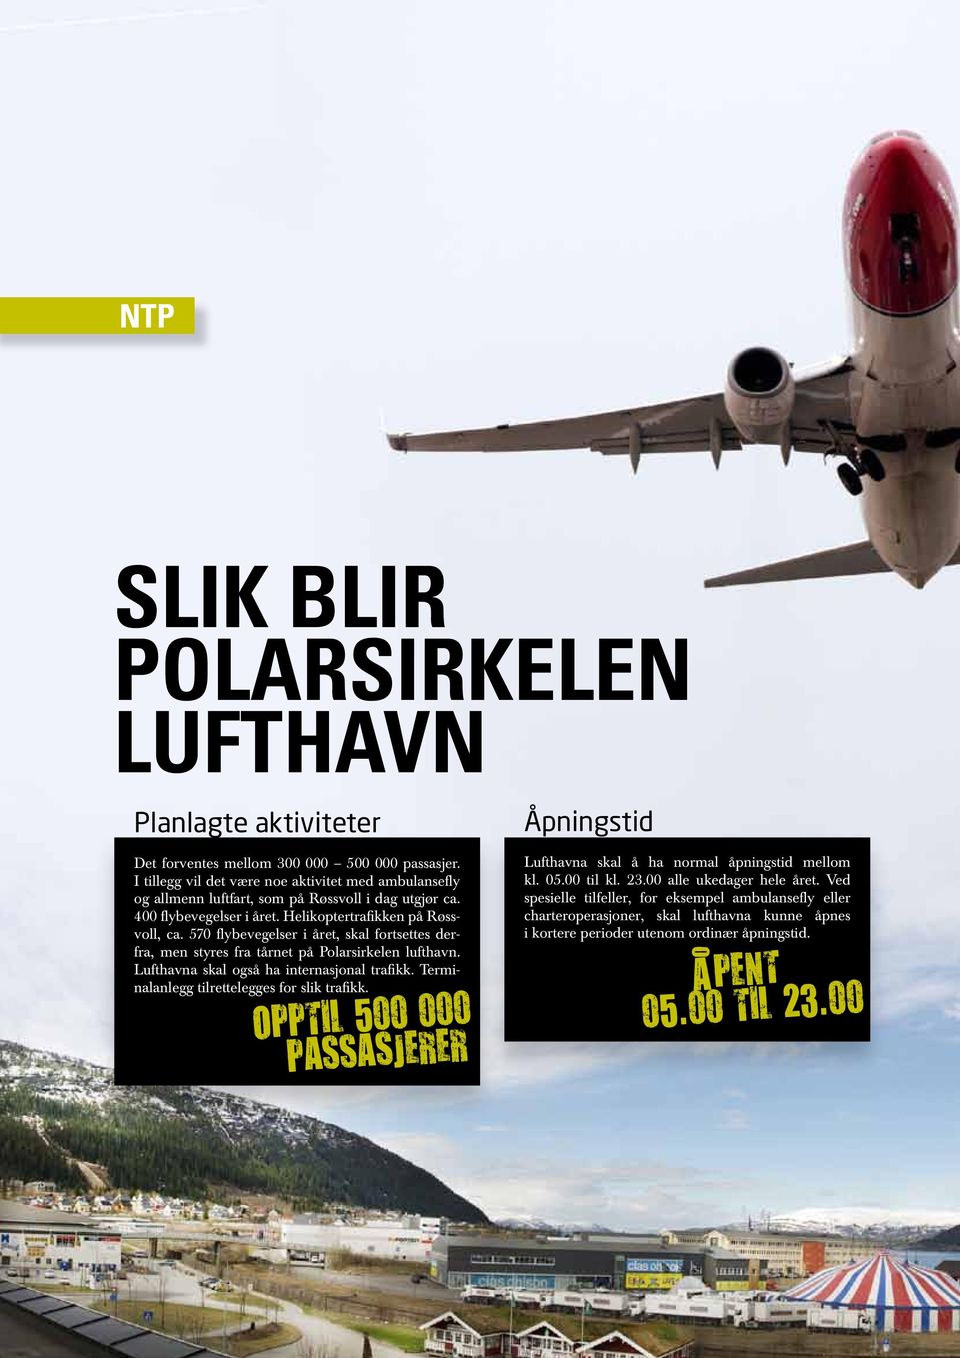 570 flybevegelser i året, skal fortsettes derfra, men styres fra tårnet på Polarsirkelen lufthavn. Lufthavna skal også ha internasjonal trafikk. Terminalanlegg tilrettelegges for slik trafikk.